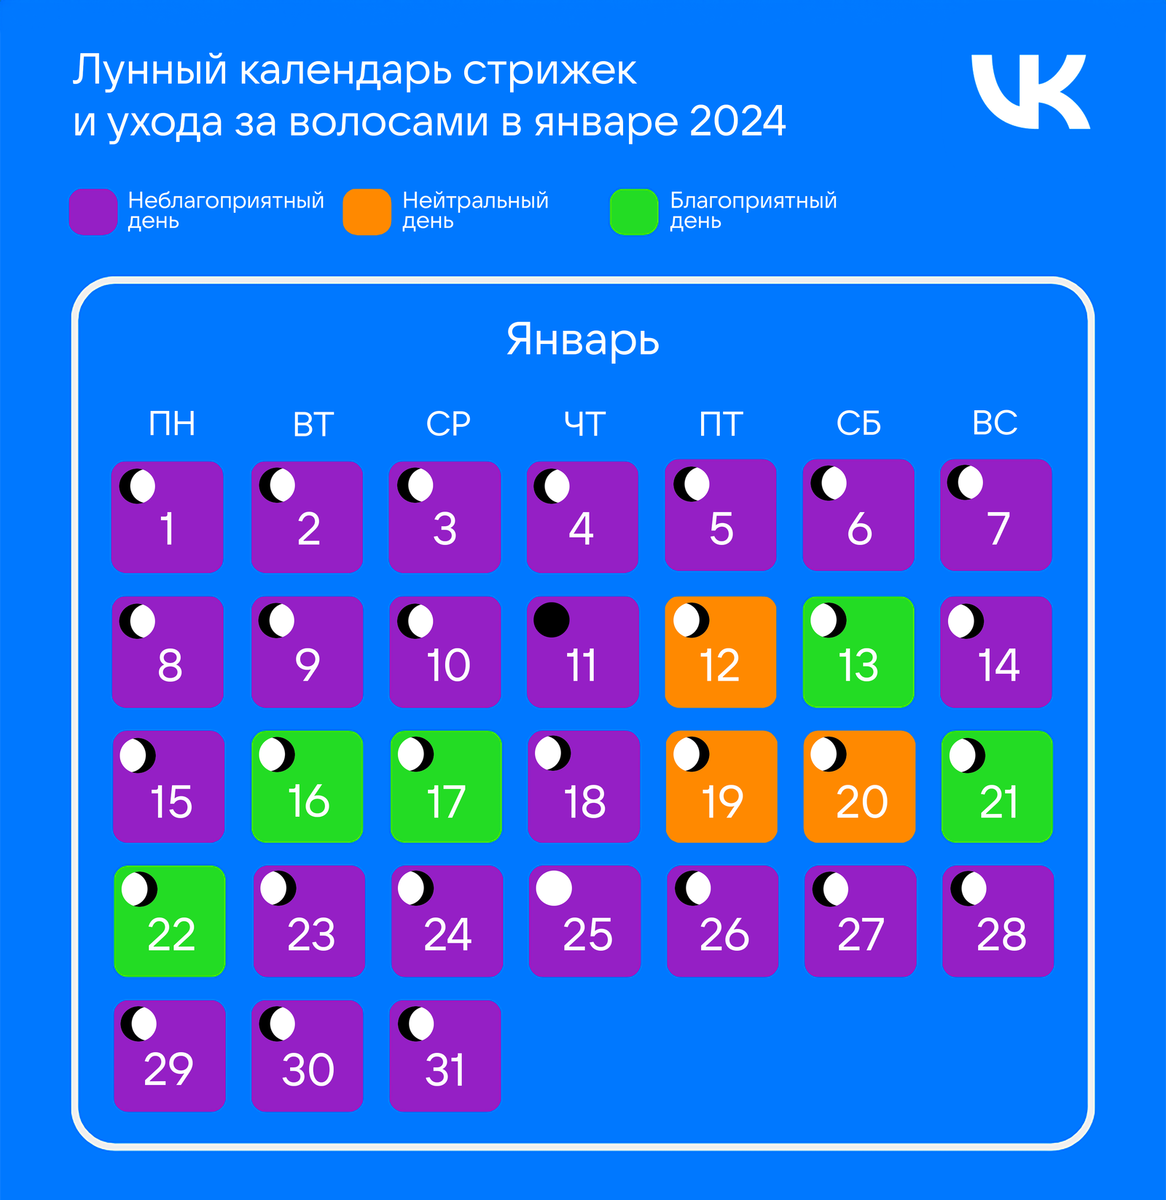 Лунный календарь стрижек на январь 2024 года | Леди Mail.ru | Дзен